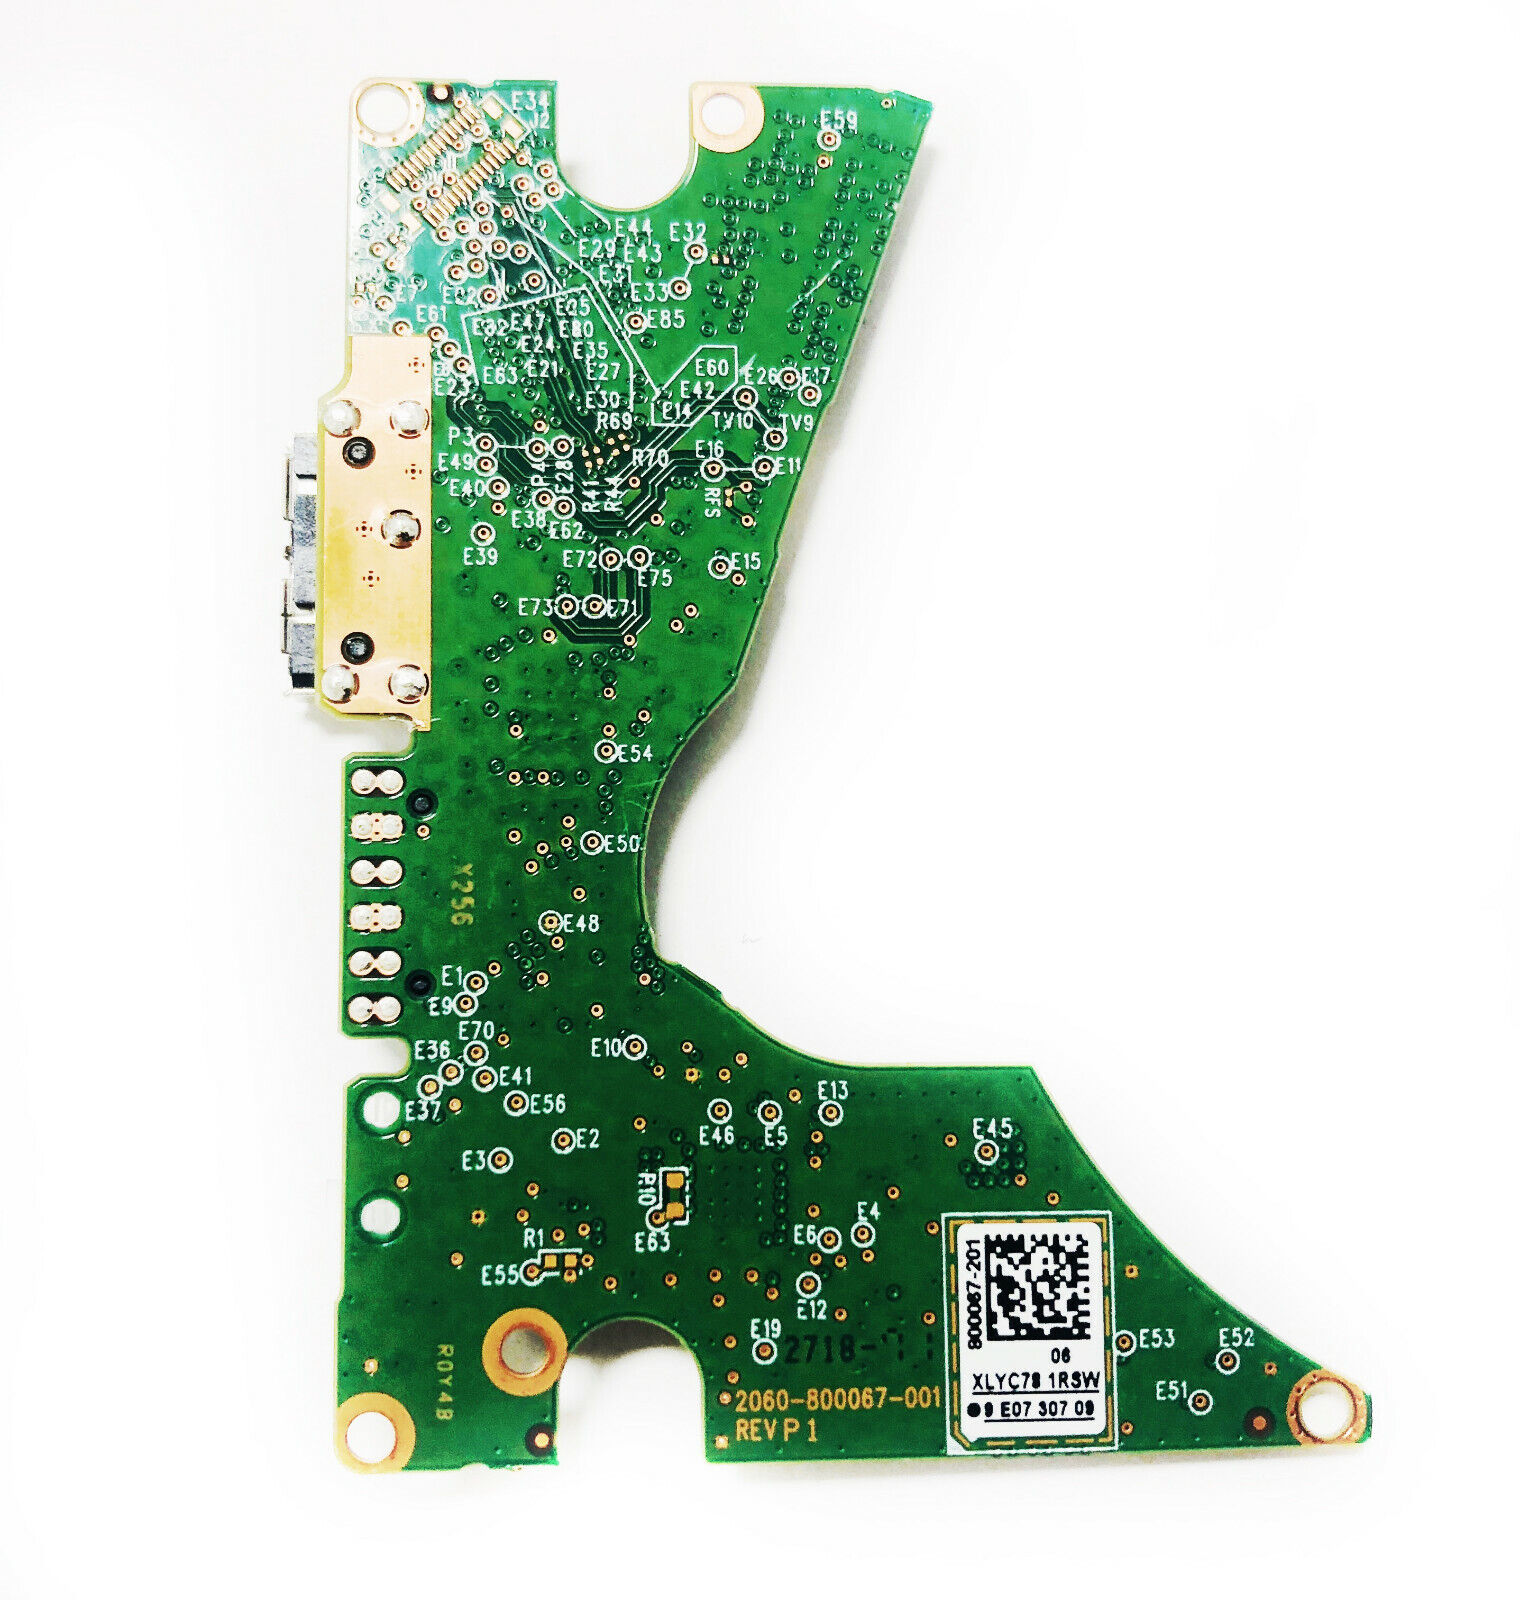 Western Digital PCB 2060-800067-001 REV P1 800067-201 07 2.5 USB 3.0 Board G4-06